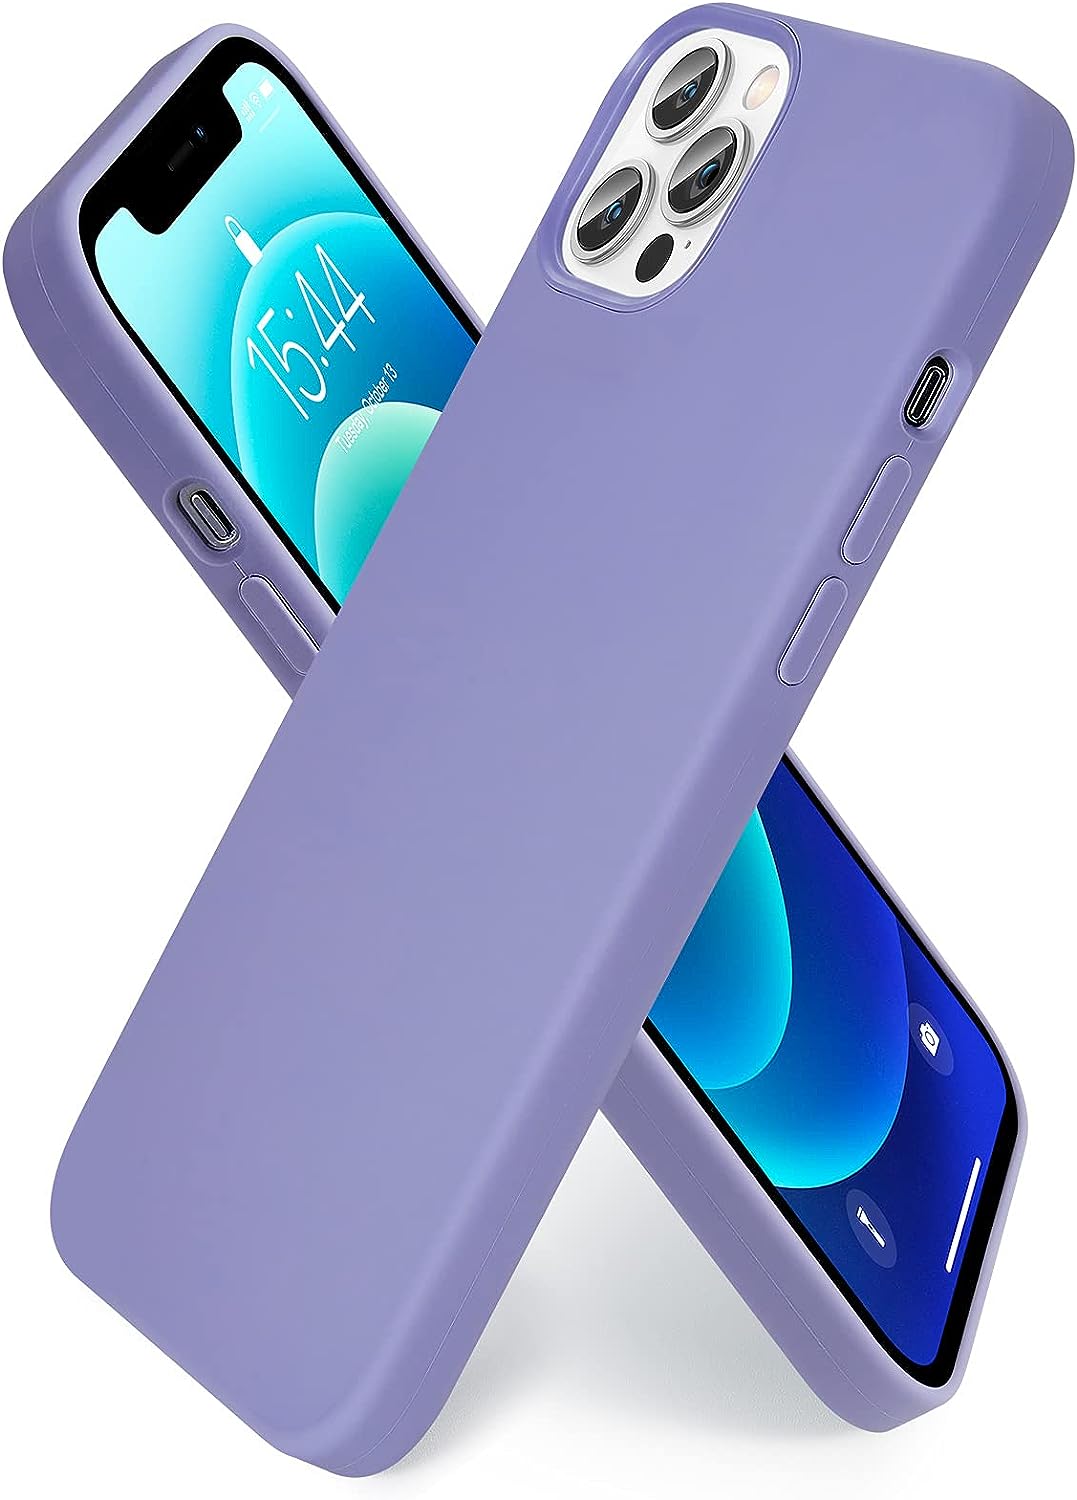 SMARTDEVIL für iPhone 12 Pro Hülle/iPhone 12 Hülle [Original Flüssige Silikon] [Mit Schutzfolie] Militärischer Schutz Slim Case Handyhülle iPhone 12 Pro/iPhone 12 Anti-Rutsch Schutzhülle-Blau